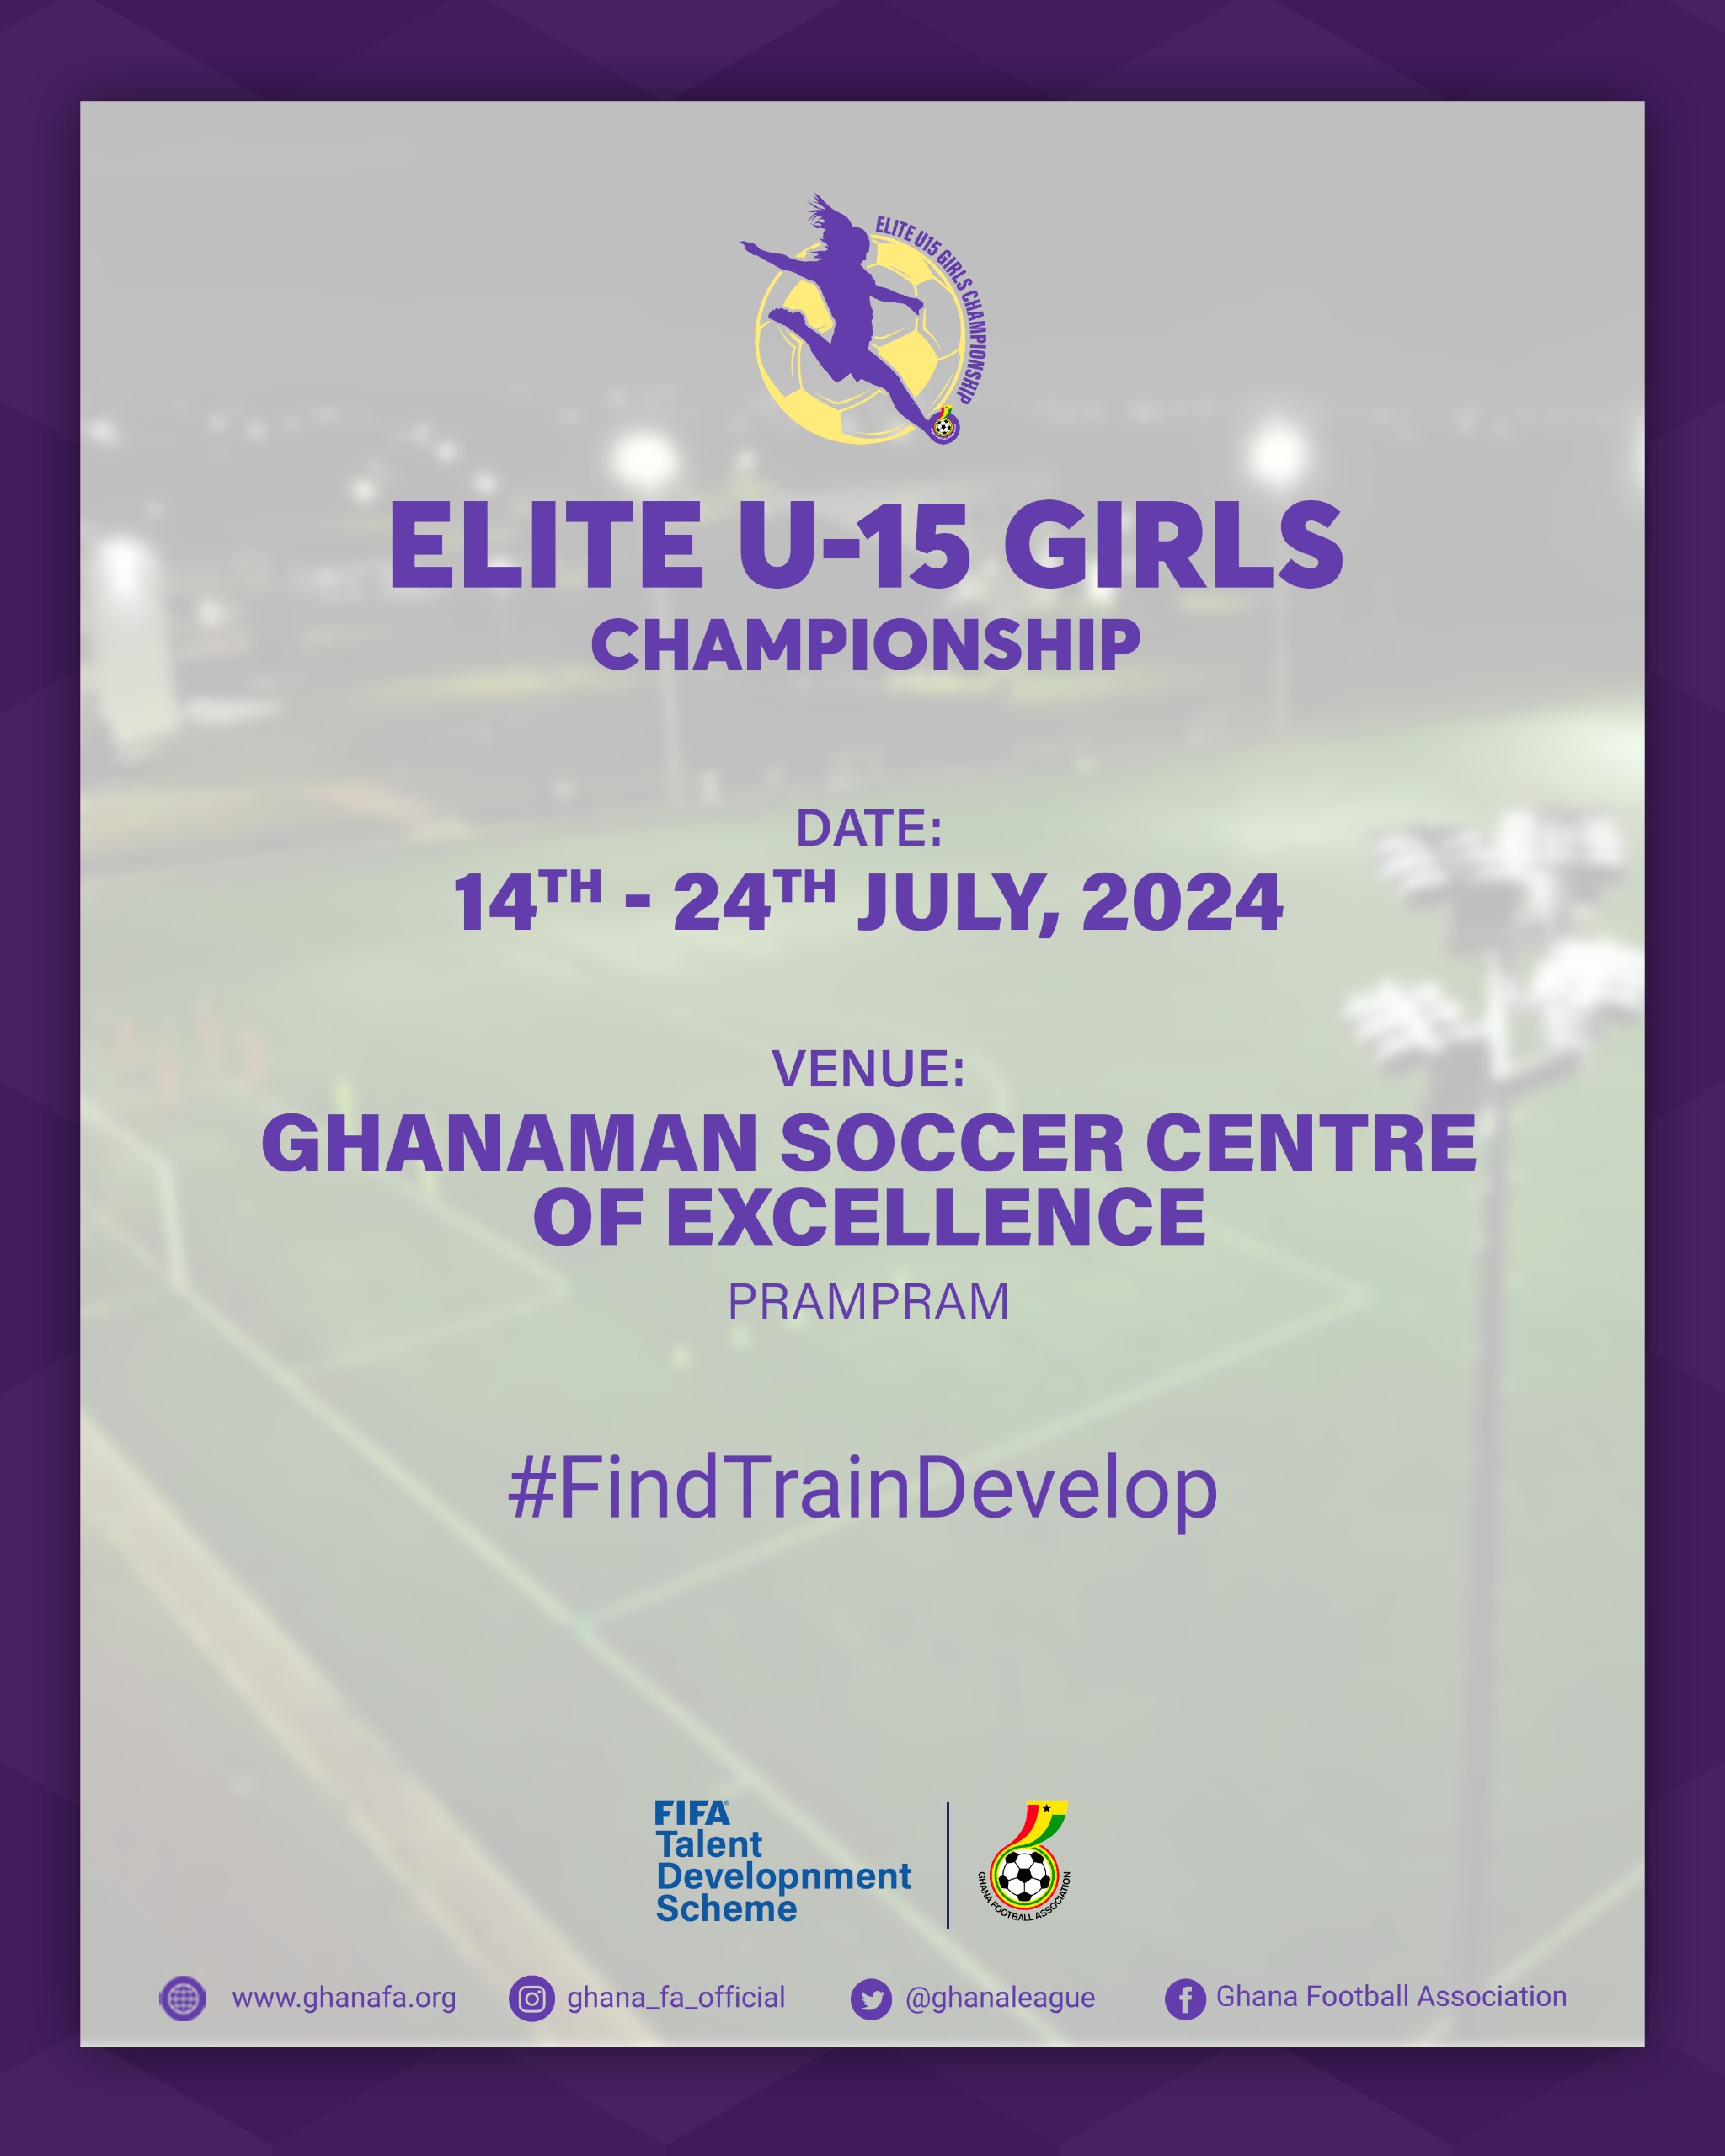 FIFA TDS: Group pairings of Elite U-15 Girls Championship